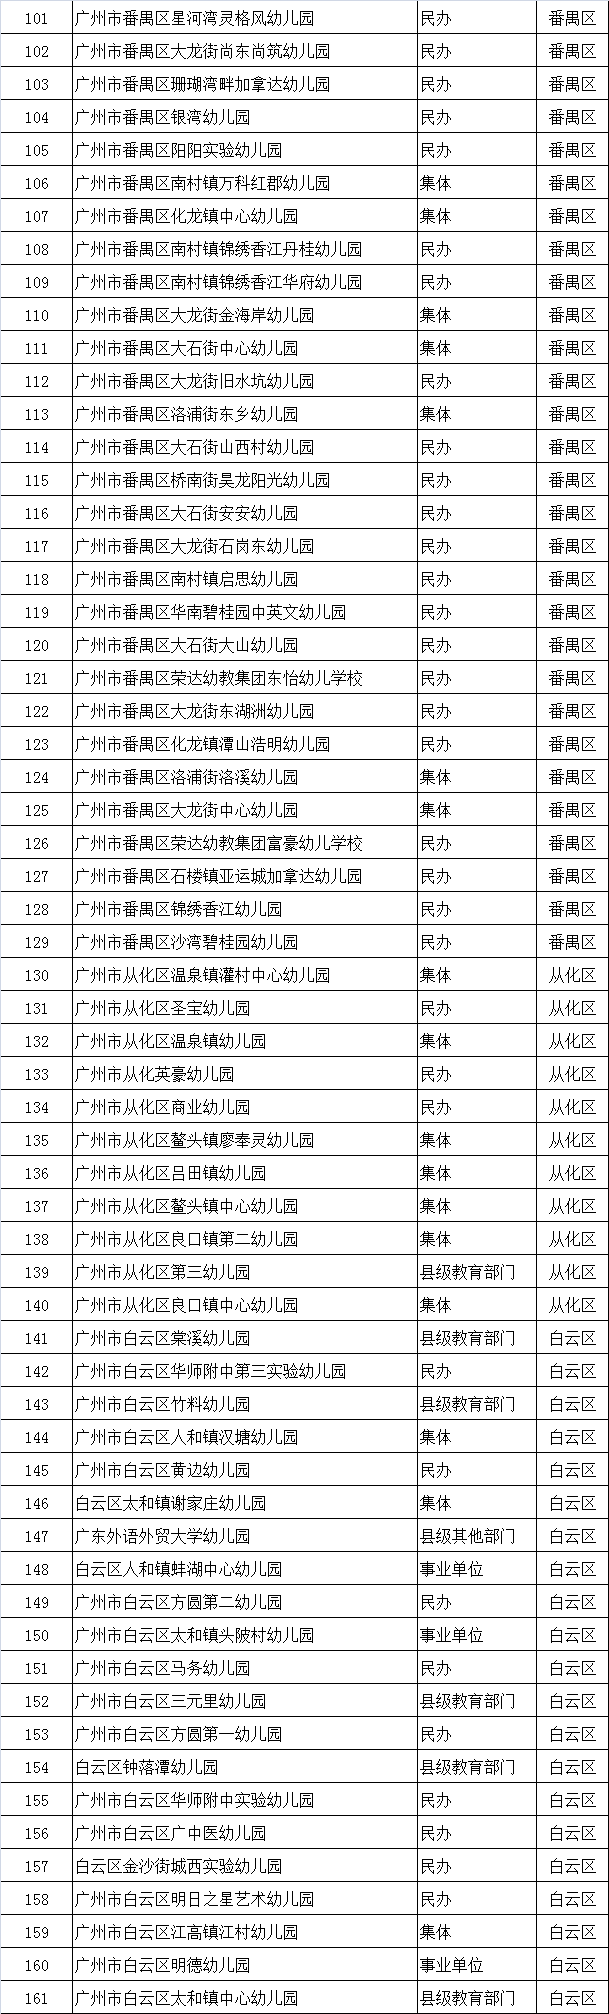 广州省市级幼儿园名单出炉 幼儿园最强区竟然不是越秀